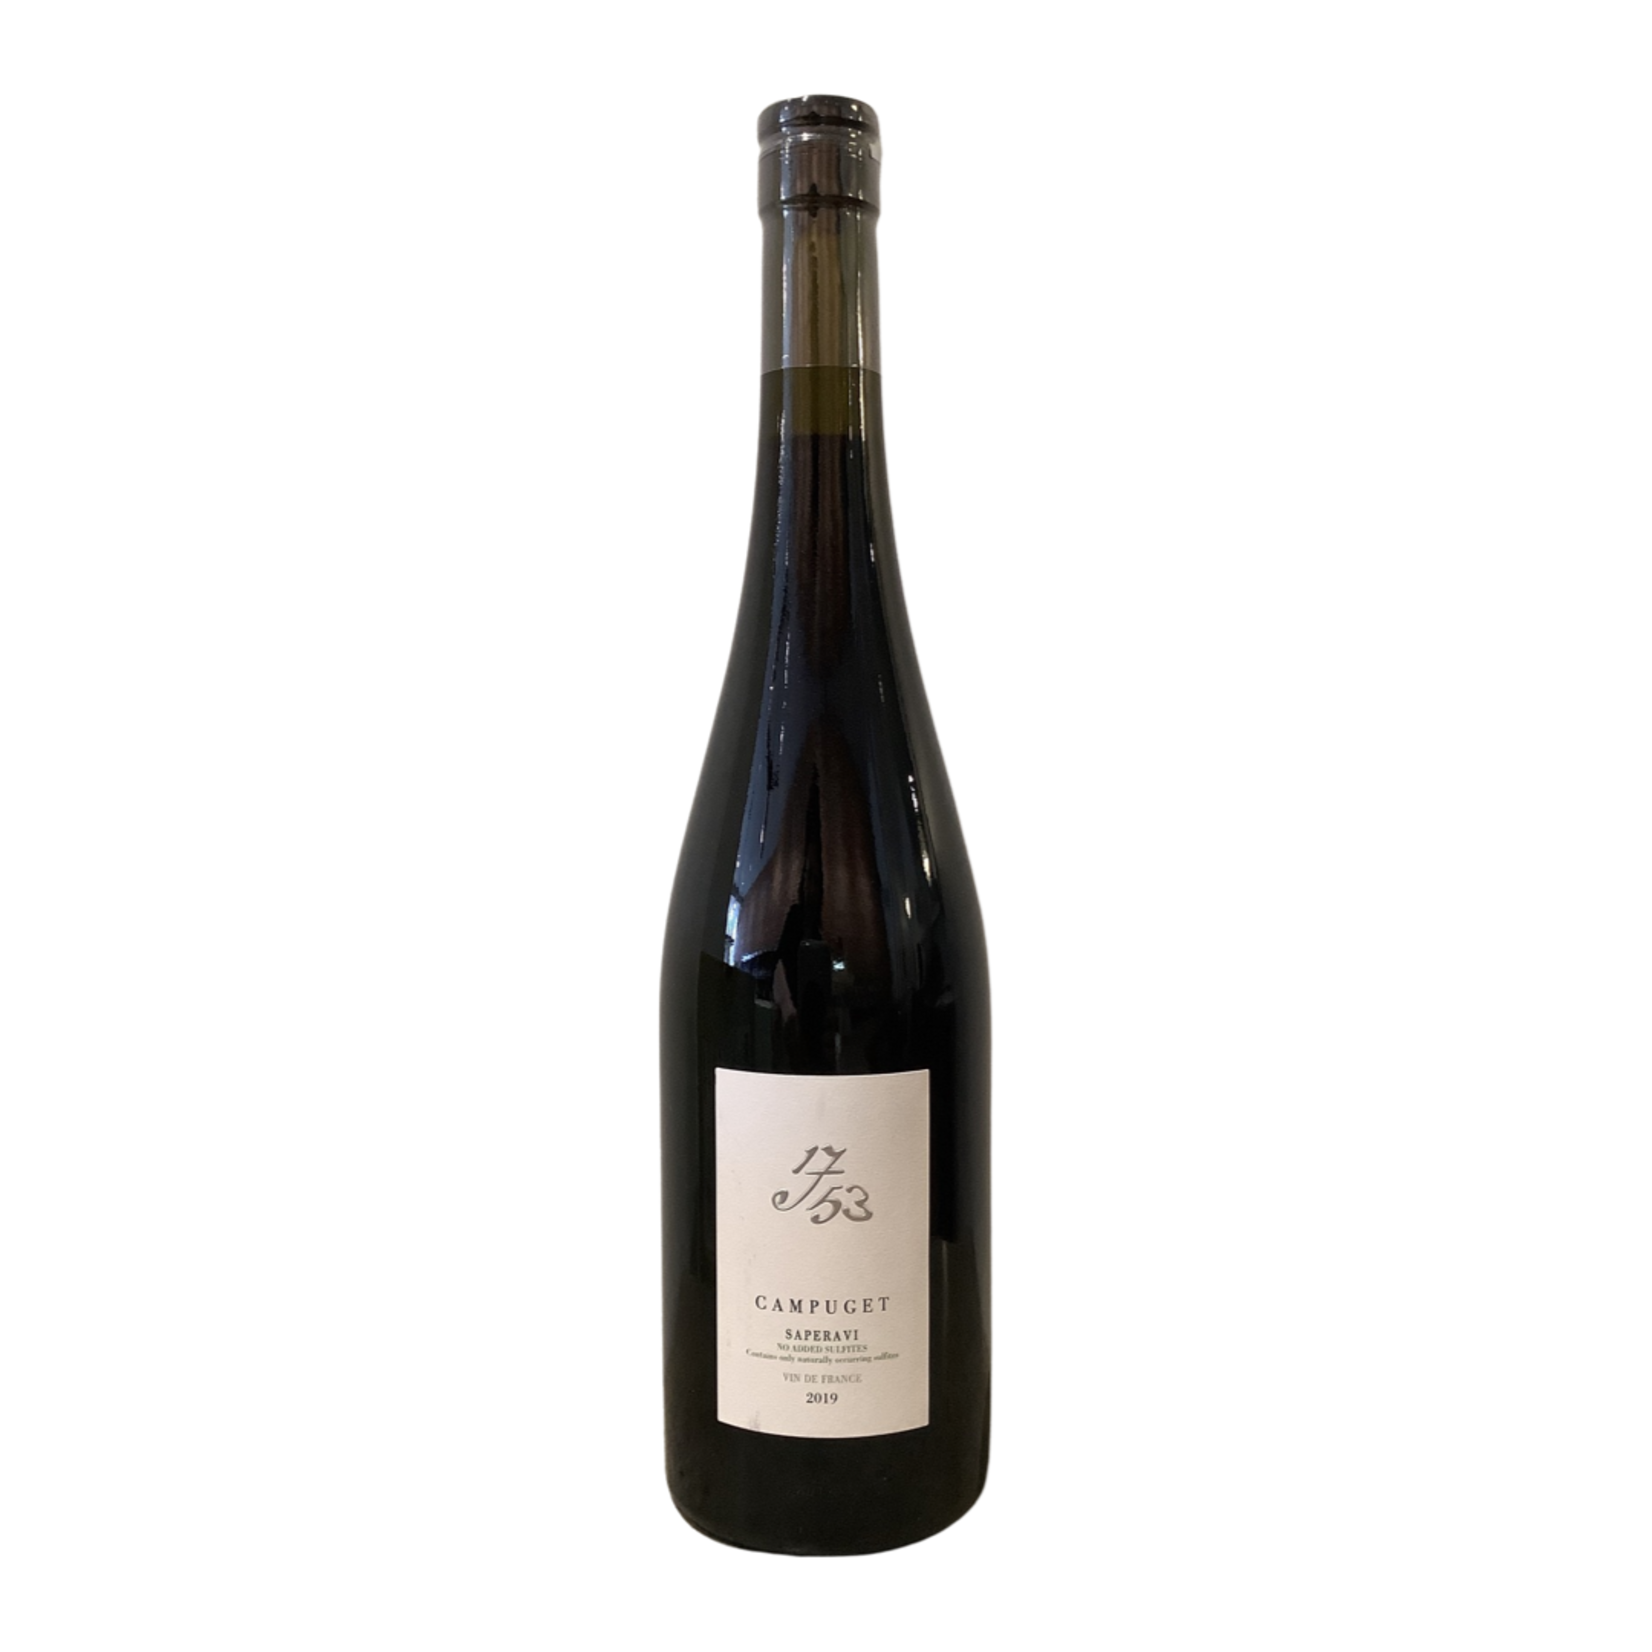 2019 Campuget "1753" Saperavi, Vin de France FR